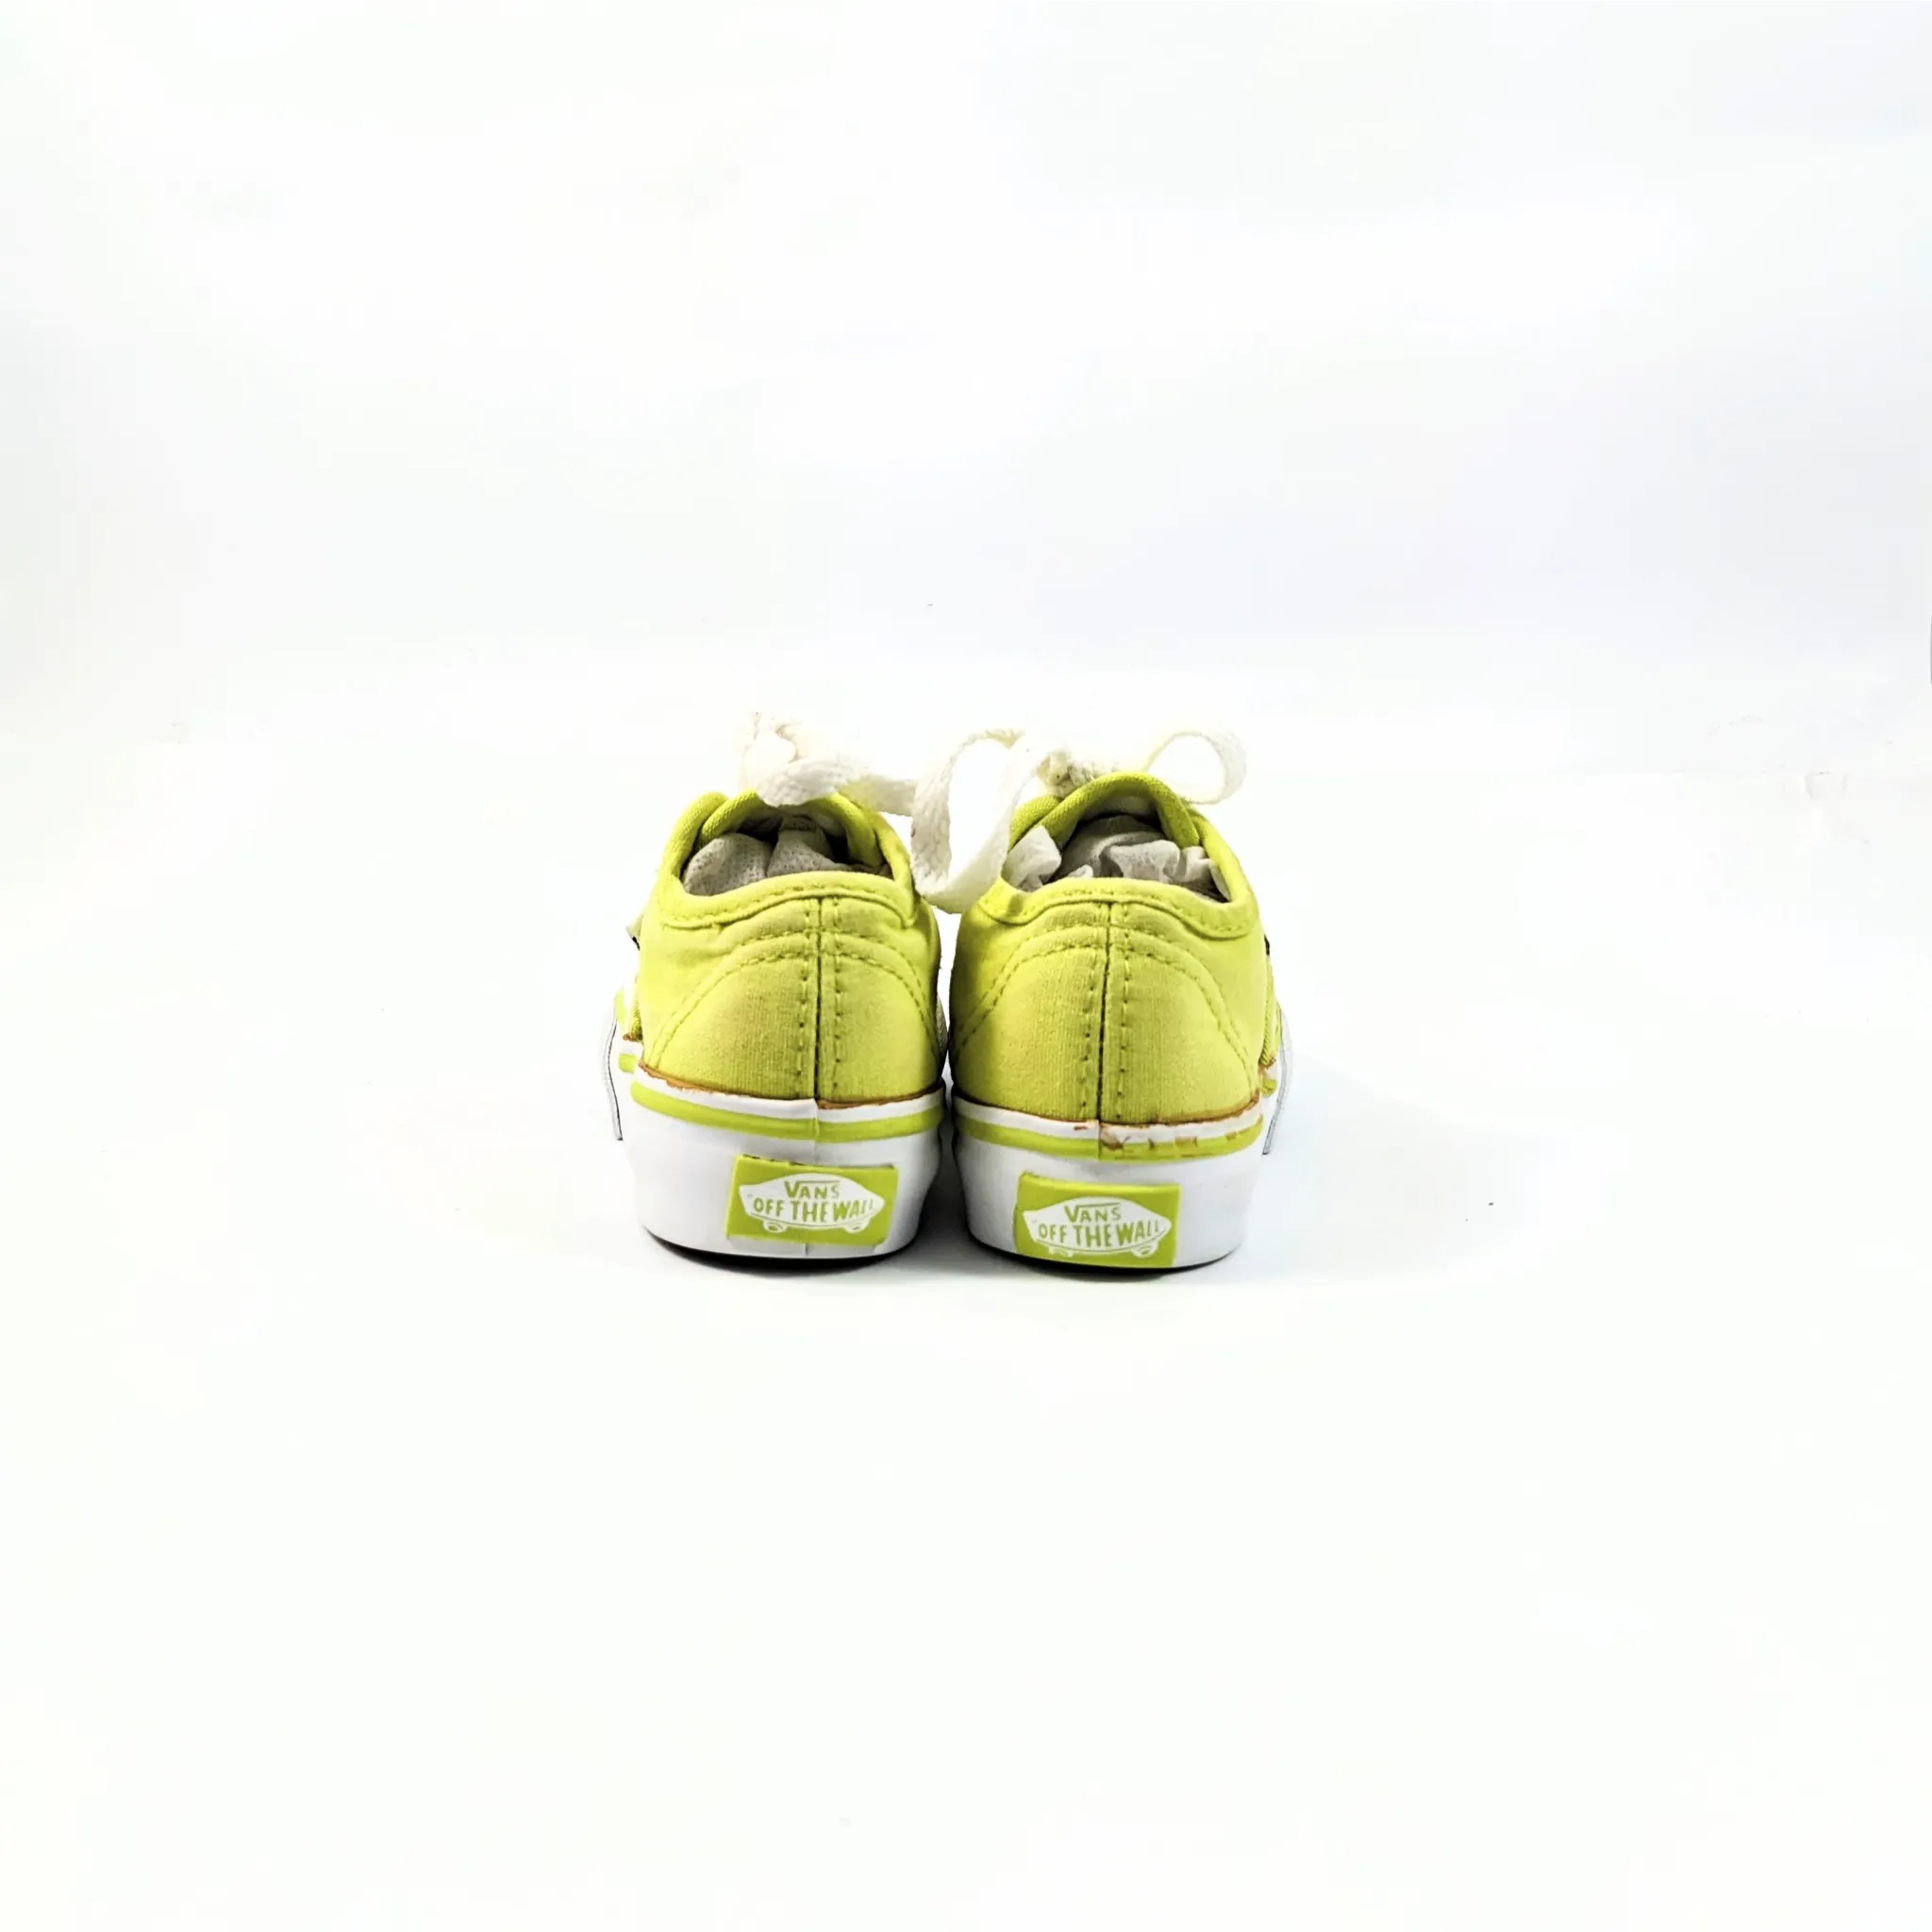 Vans Yellow Sneakers Toddler